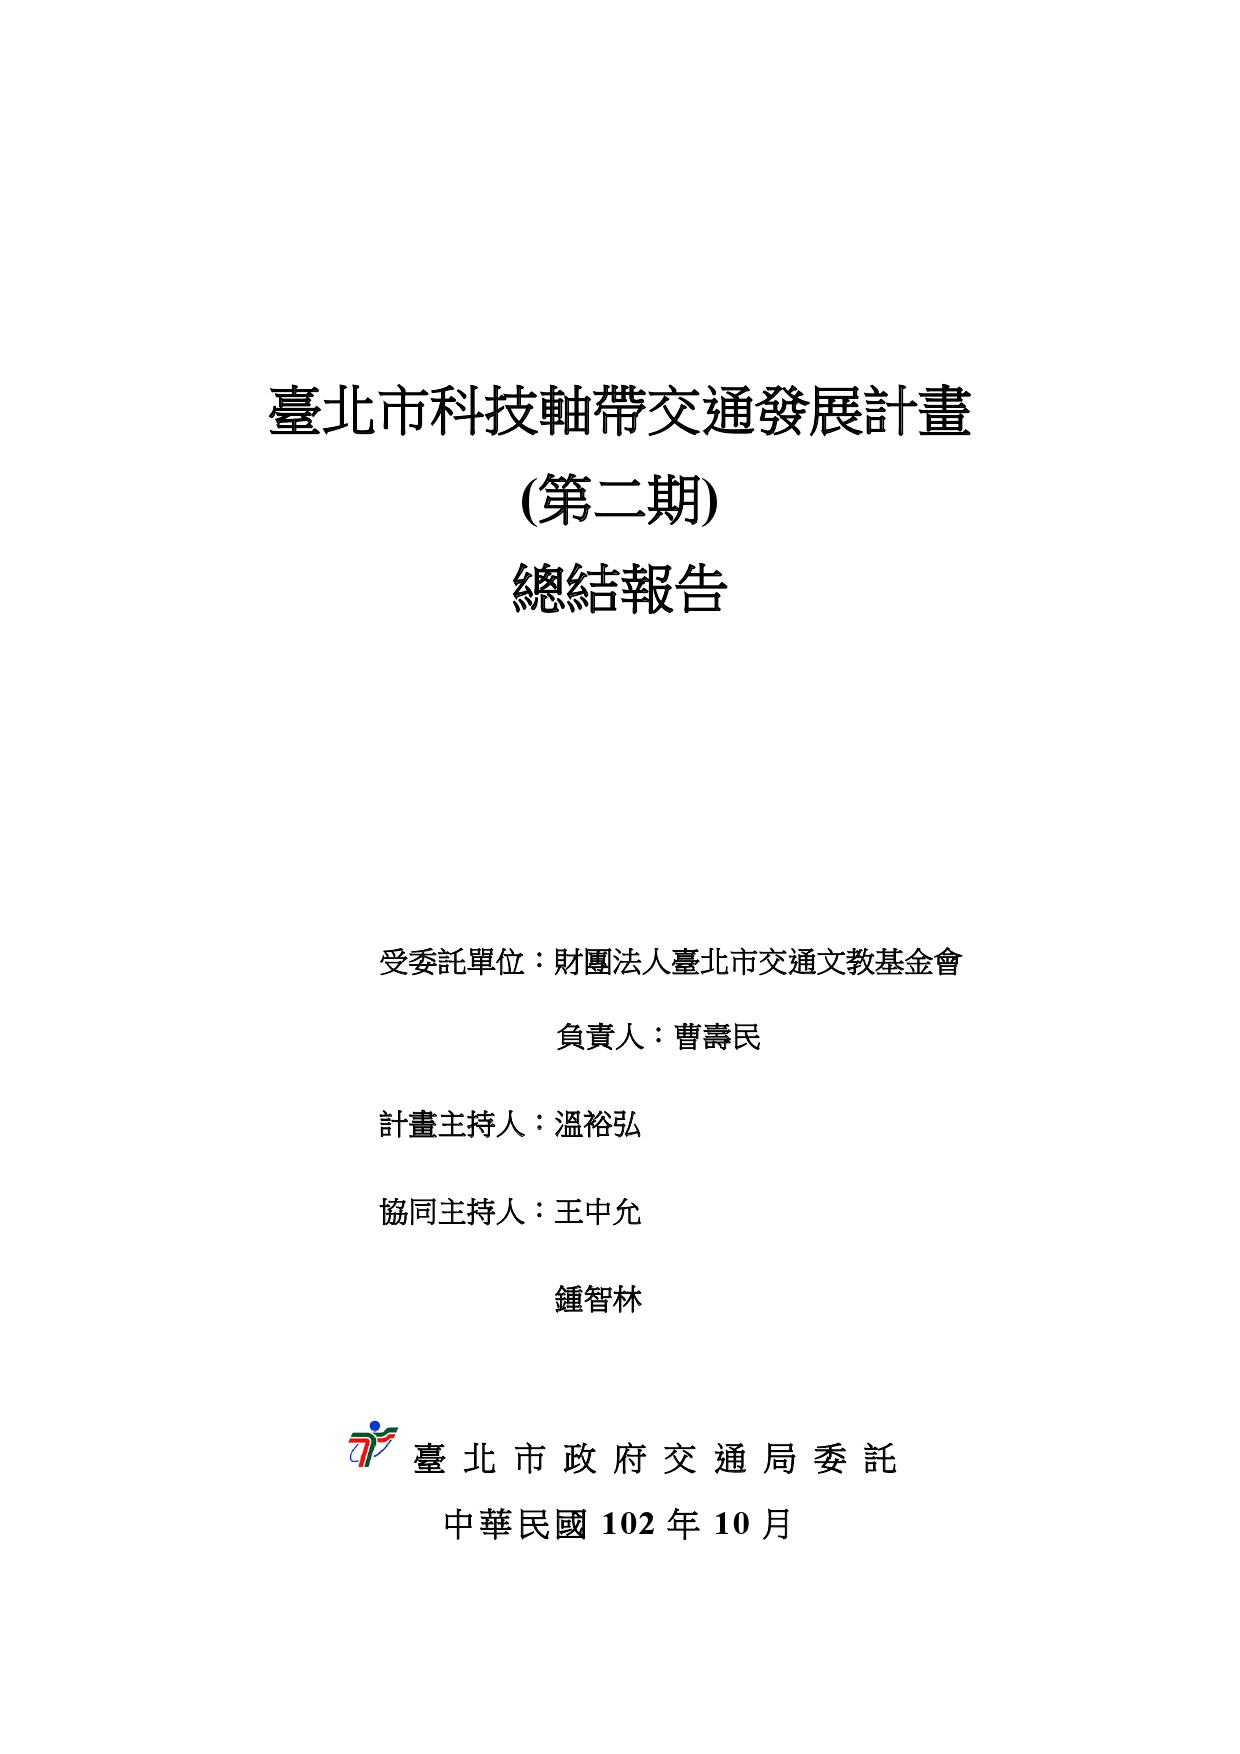 臺北市科技軸帶交通發展計畫(第二期)總結報告